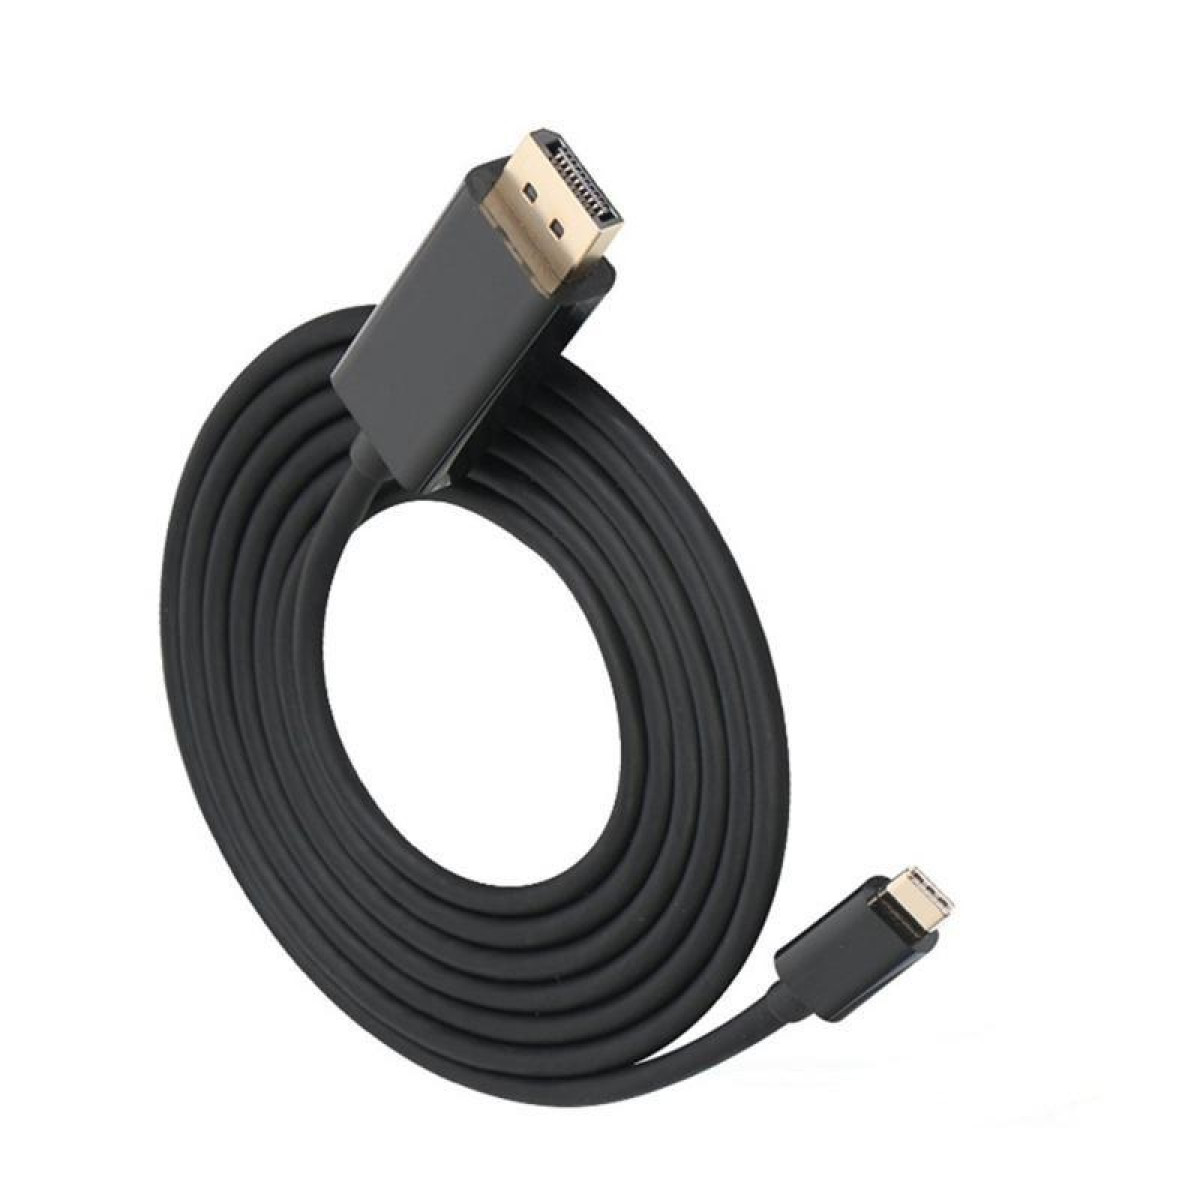 INF USB-C zu DisplayPort (DP) Adapter schwarz, 4K USB-C kabel (1,8 m)